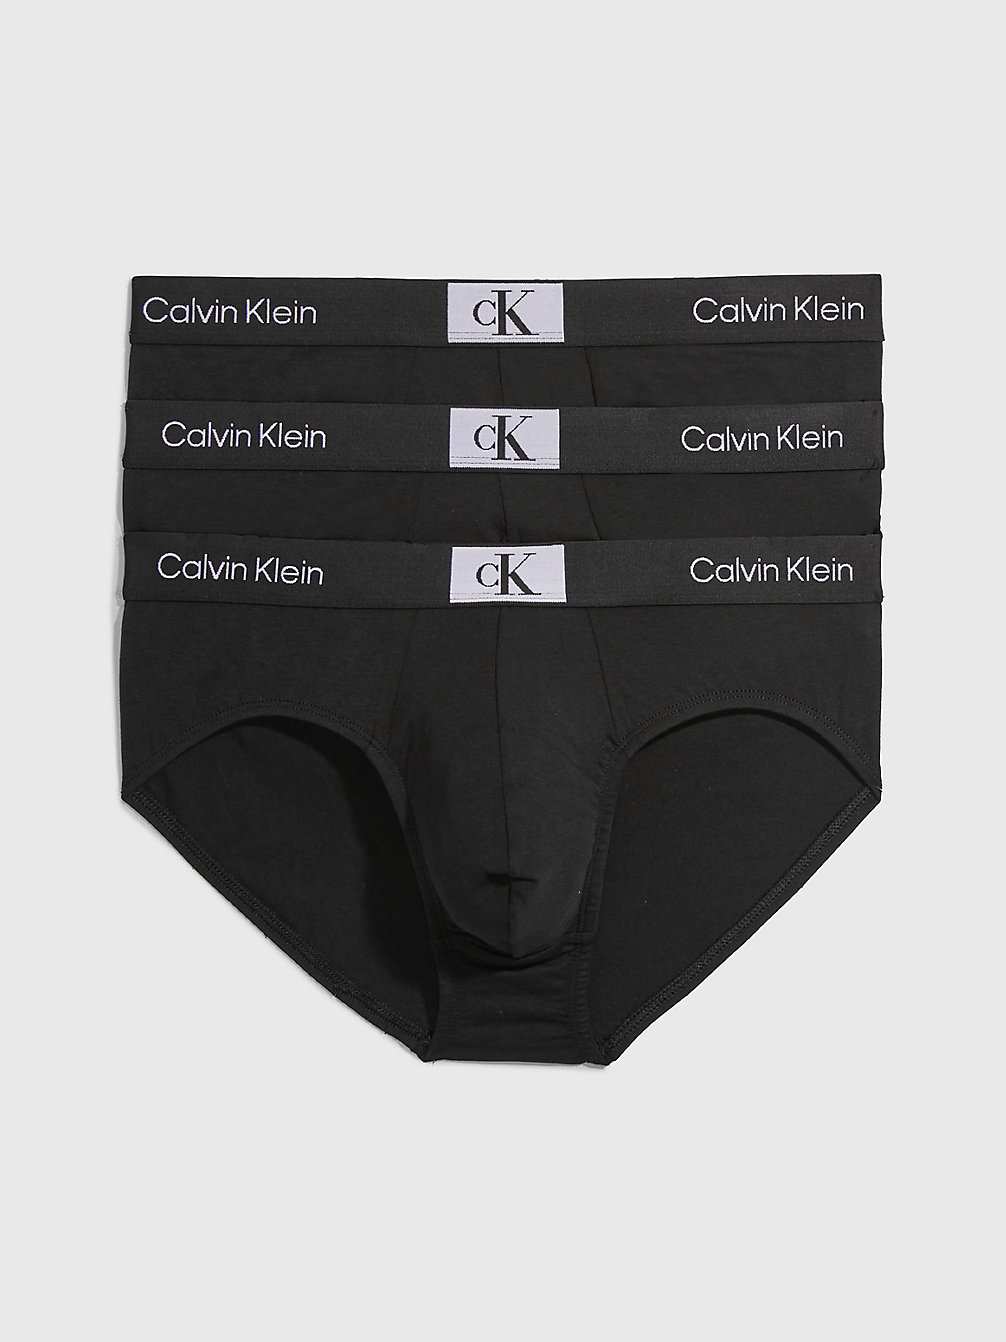 BLACK/ BLACK/ BLACK 3 Pack Briefs - Ck96 undefined men Calvin Klein